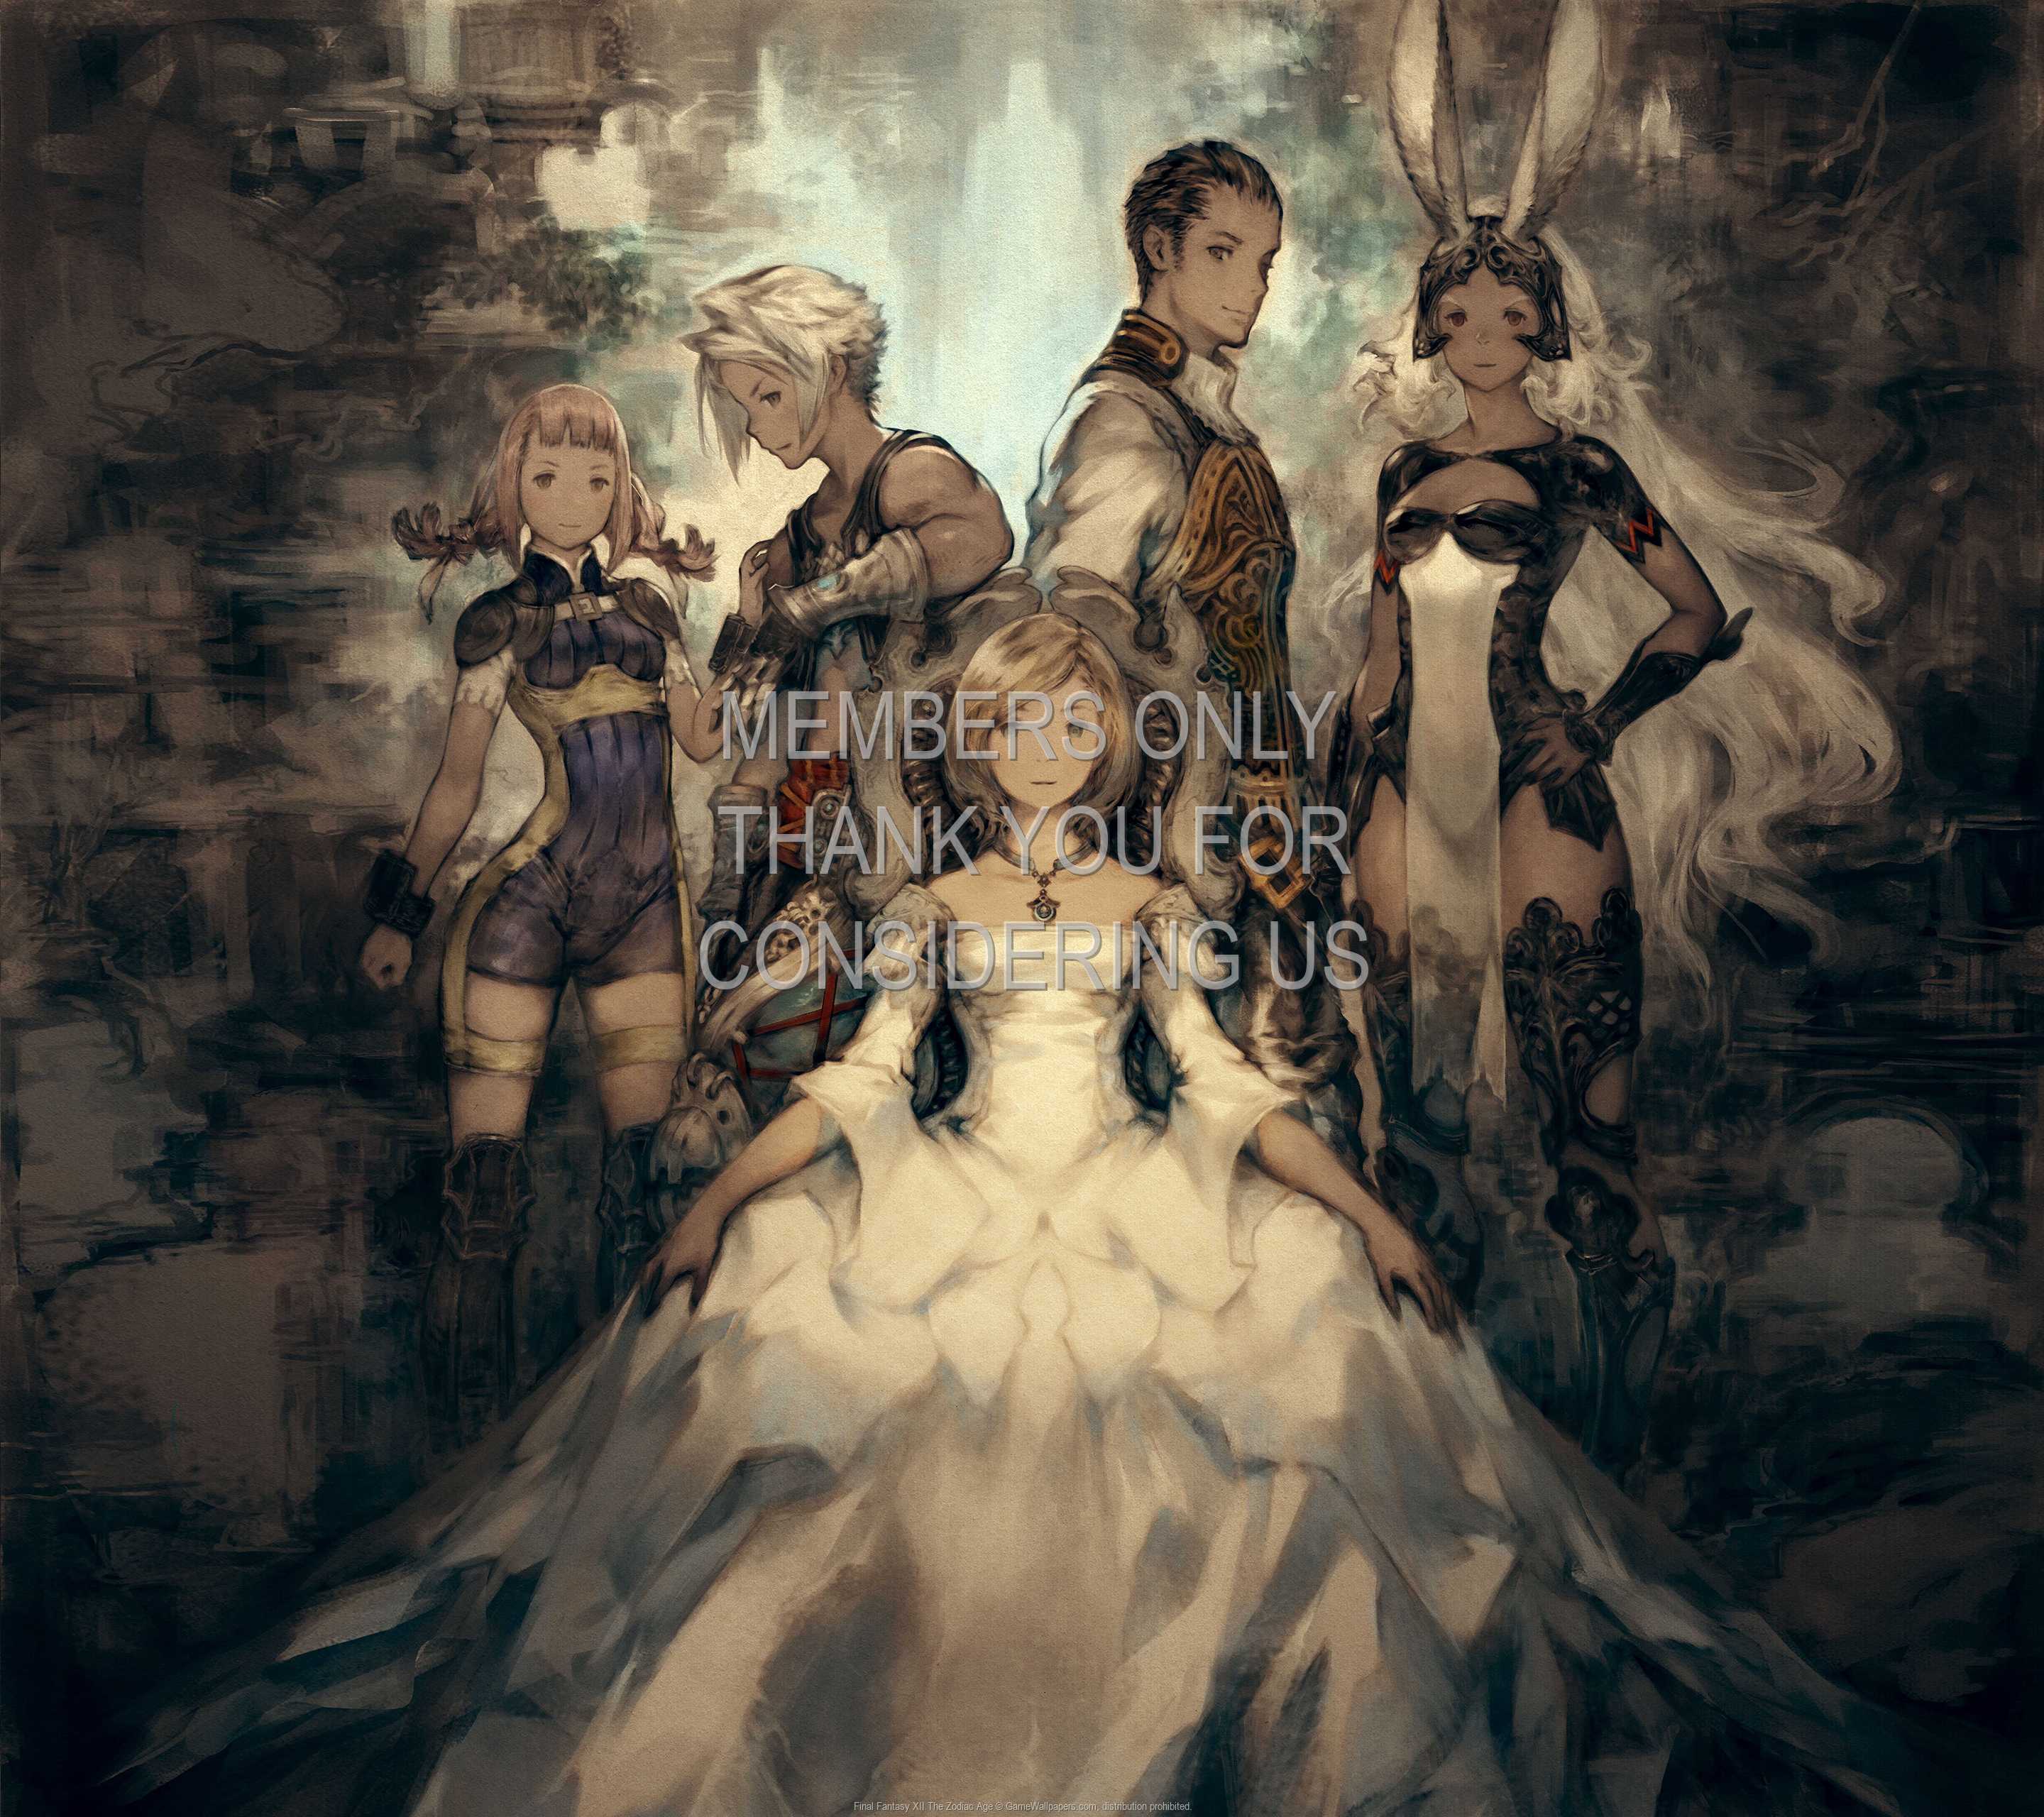 Final Fantasy XII The Zodiac Age 1440p Horizontal Mobile fond d'cran 01